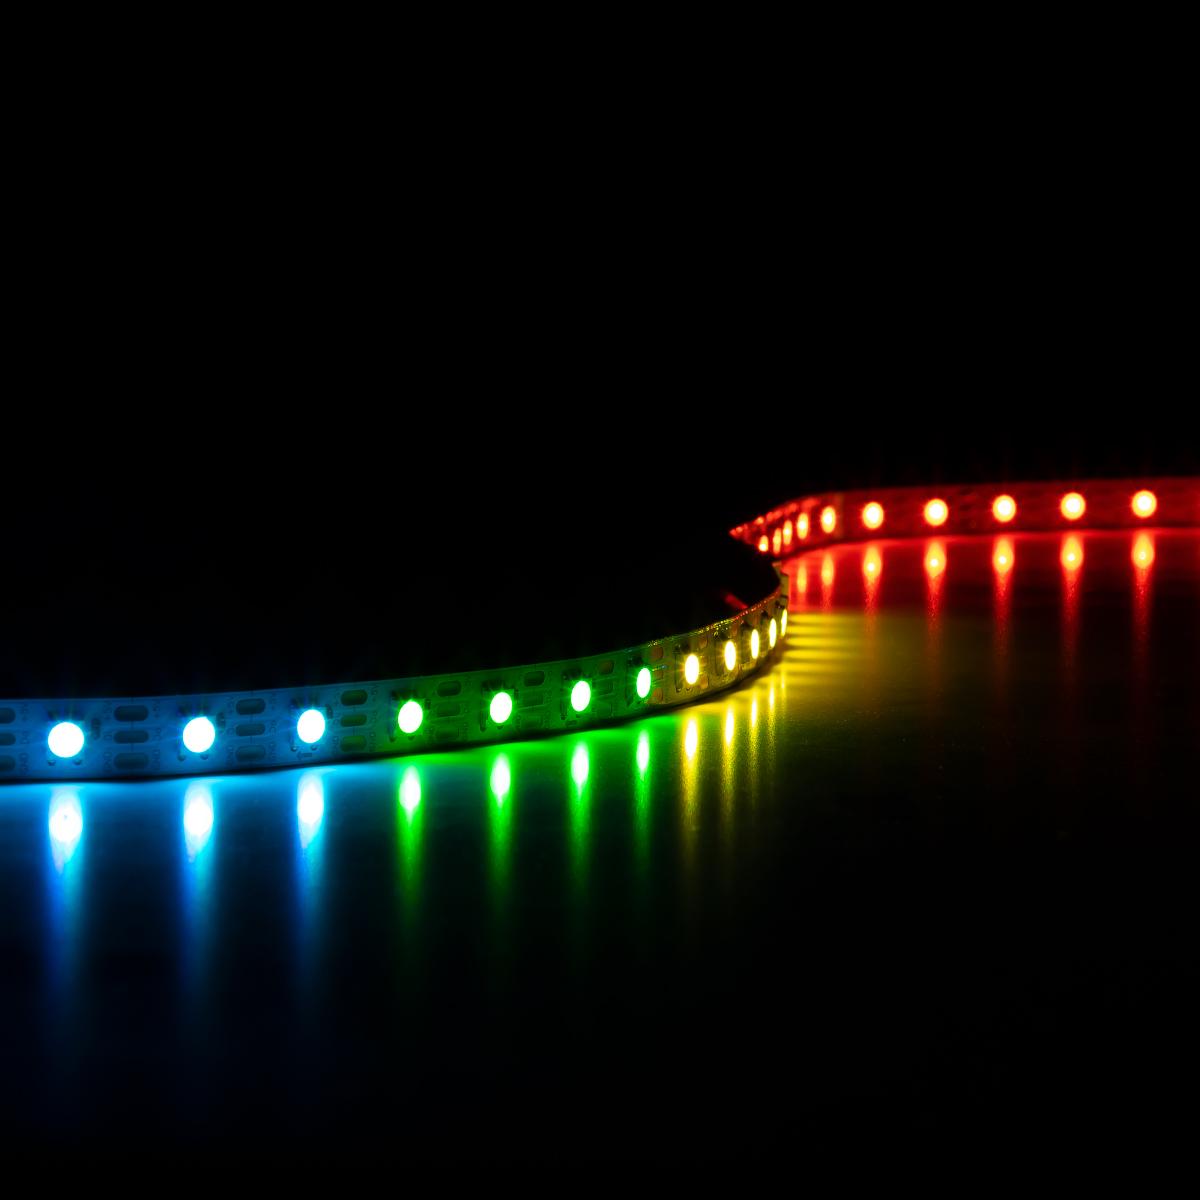 12V 5W Bunte COB LED Licht Streifen RGW Rot Grün Weiß 3-farbe LED Lampe für  Gesicht anerkennung Beleuchtung Signal Dekoration Lampe